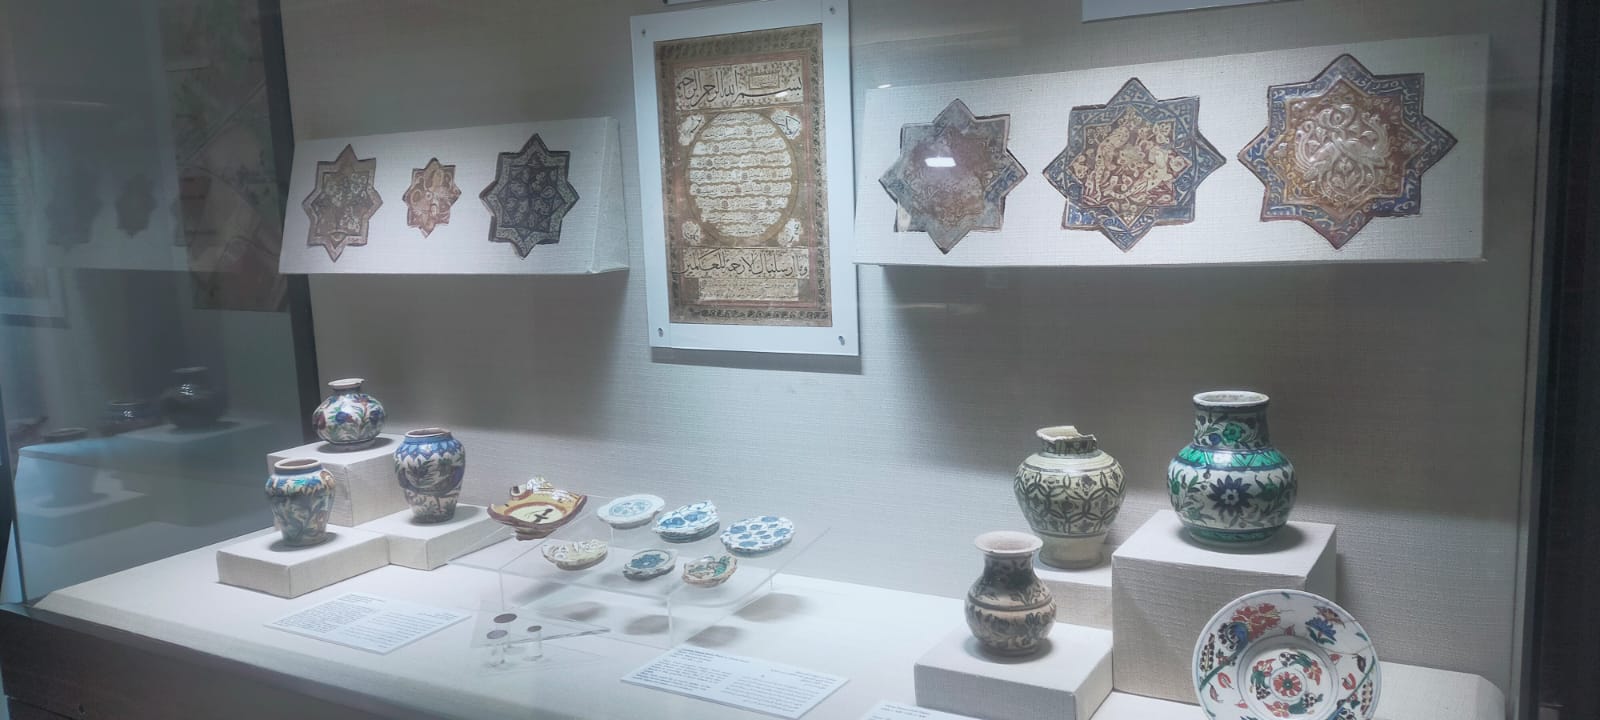 متحف جامعة عين شمس بقصر الزعفران  (20)